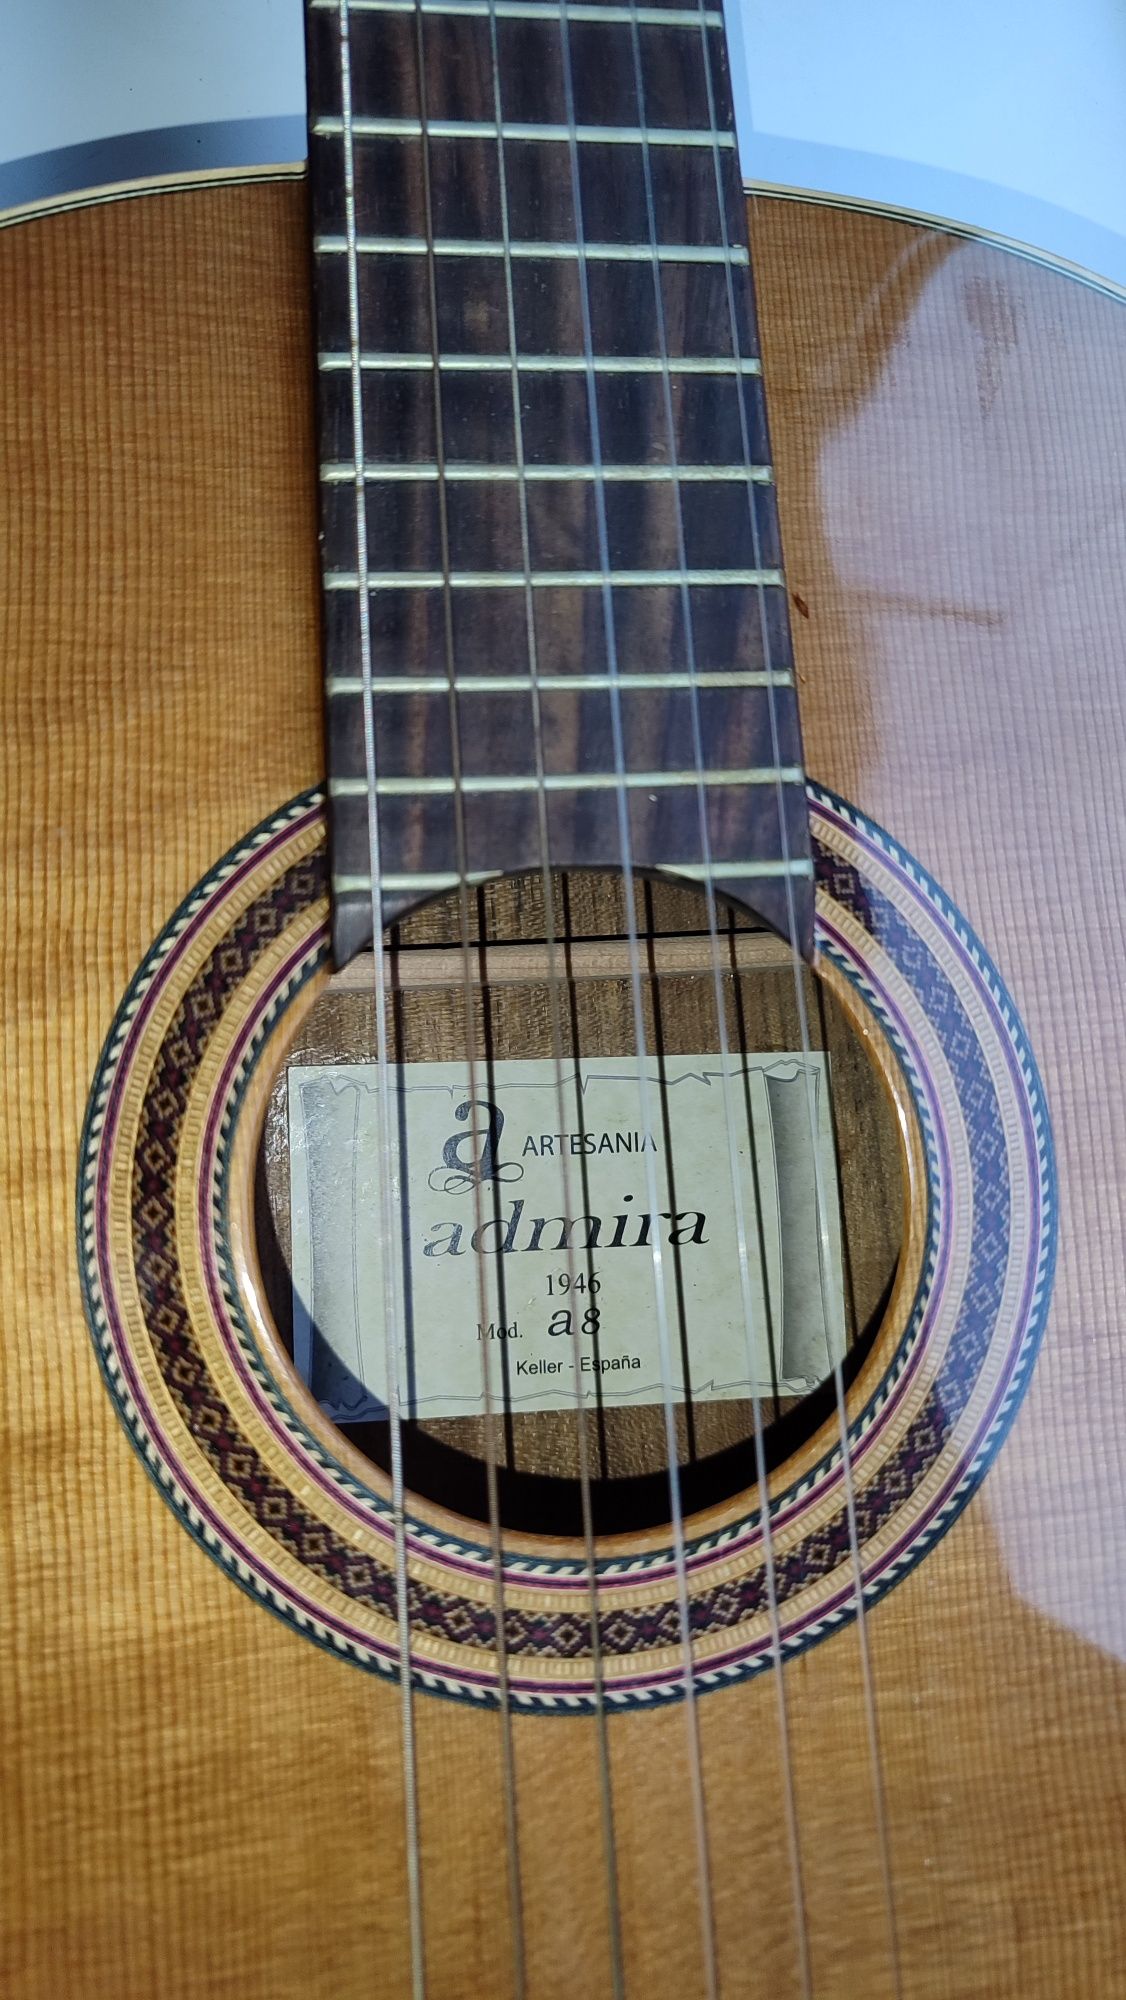 Классическая гитара Admira A8